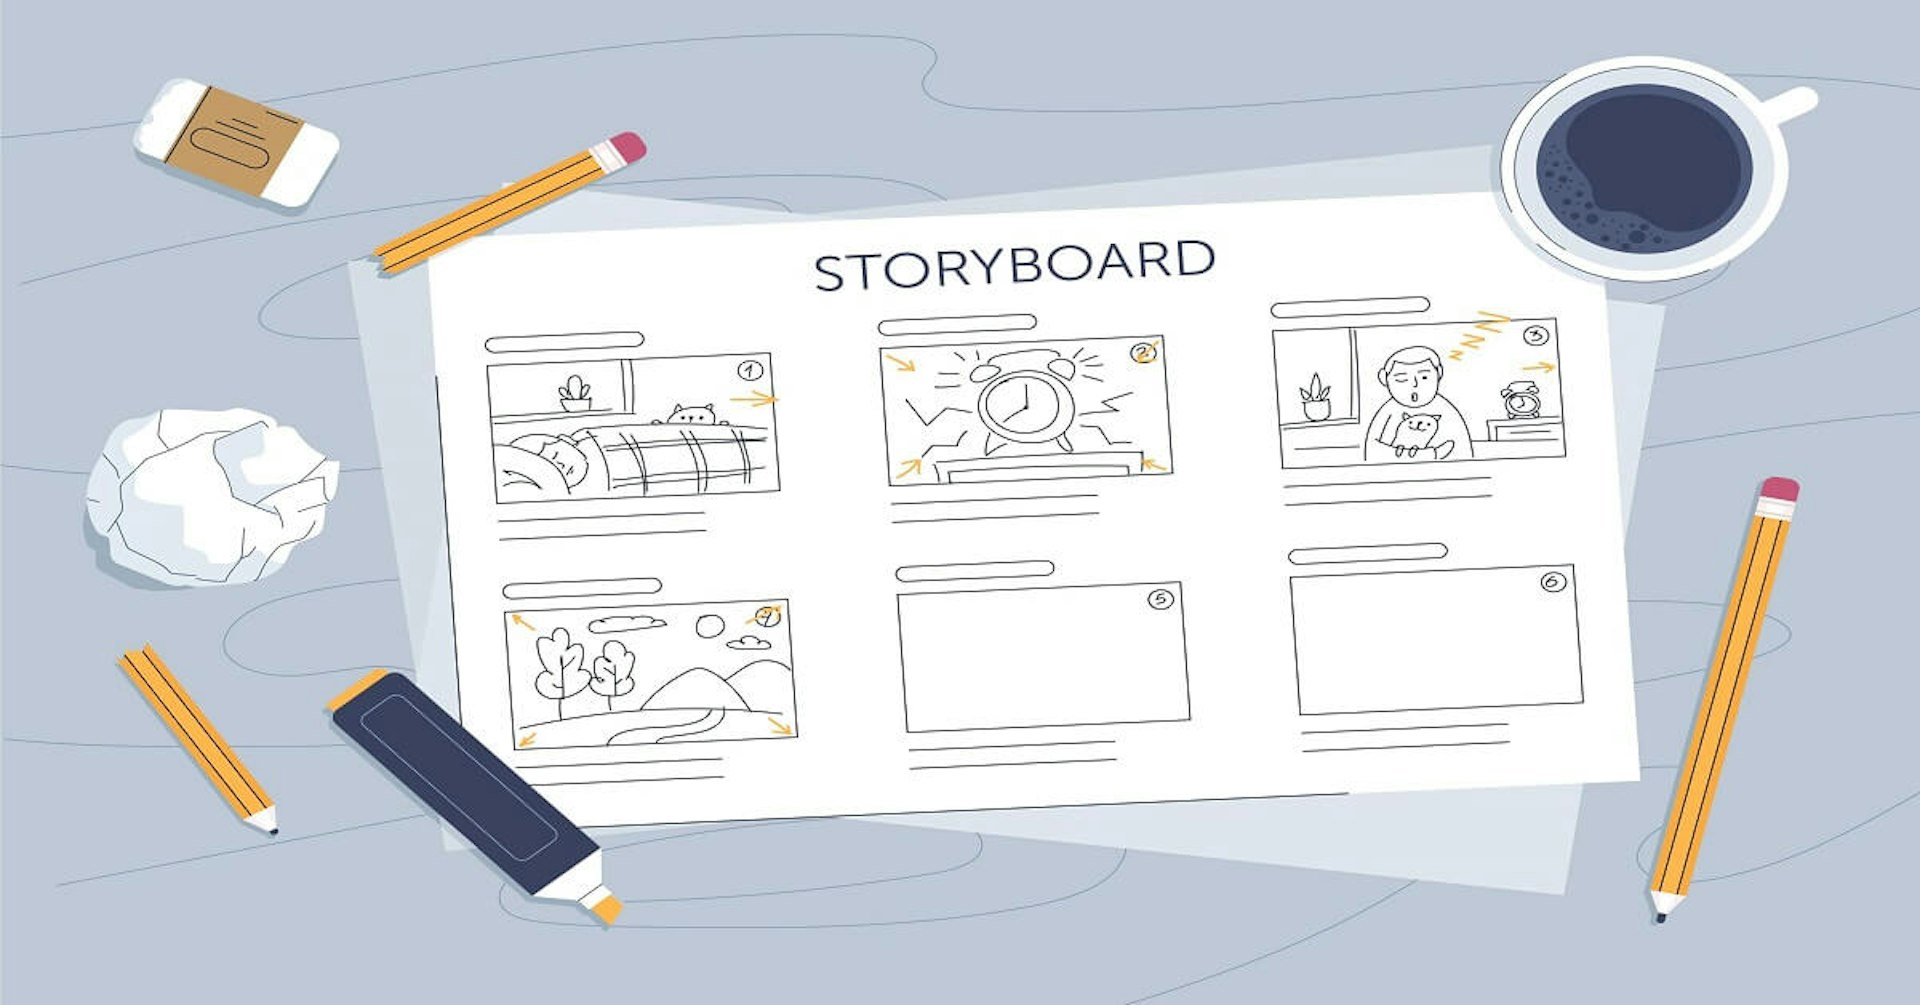 Descubre qué es un storyboard y dale forma a tu primer proyecto audiovisual